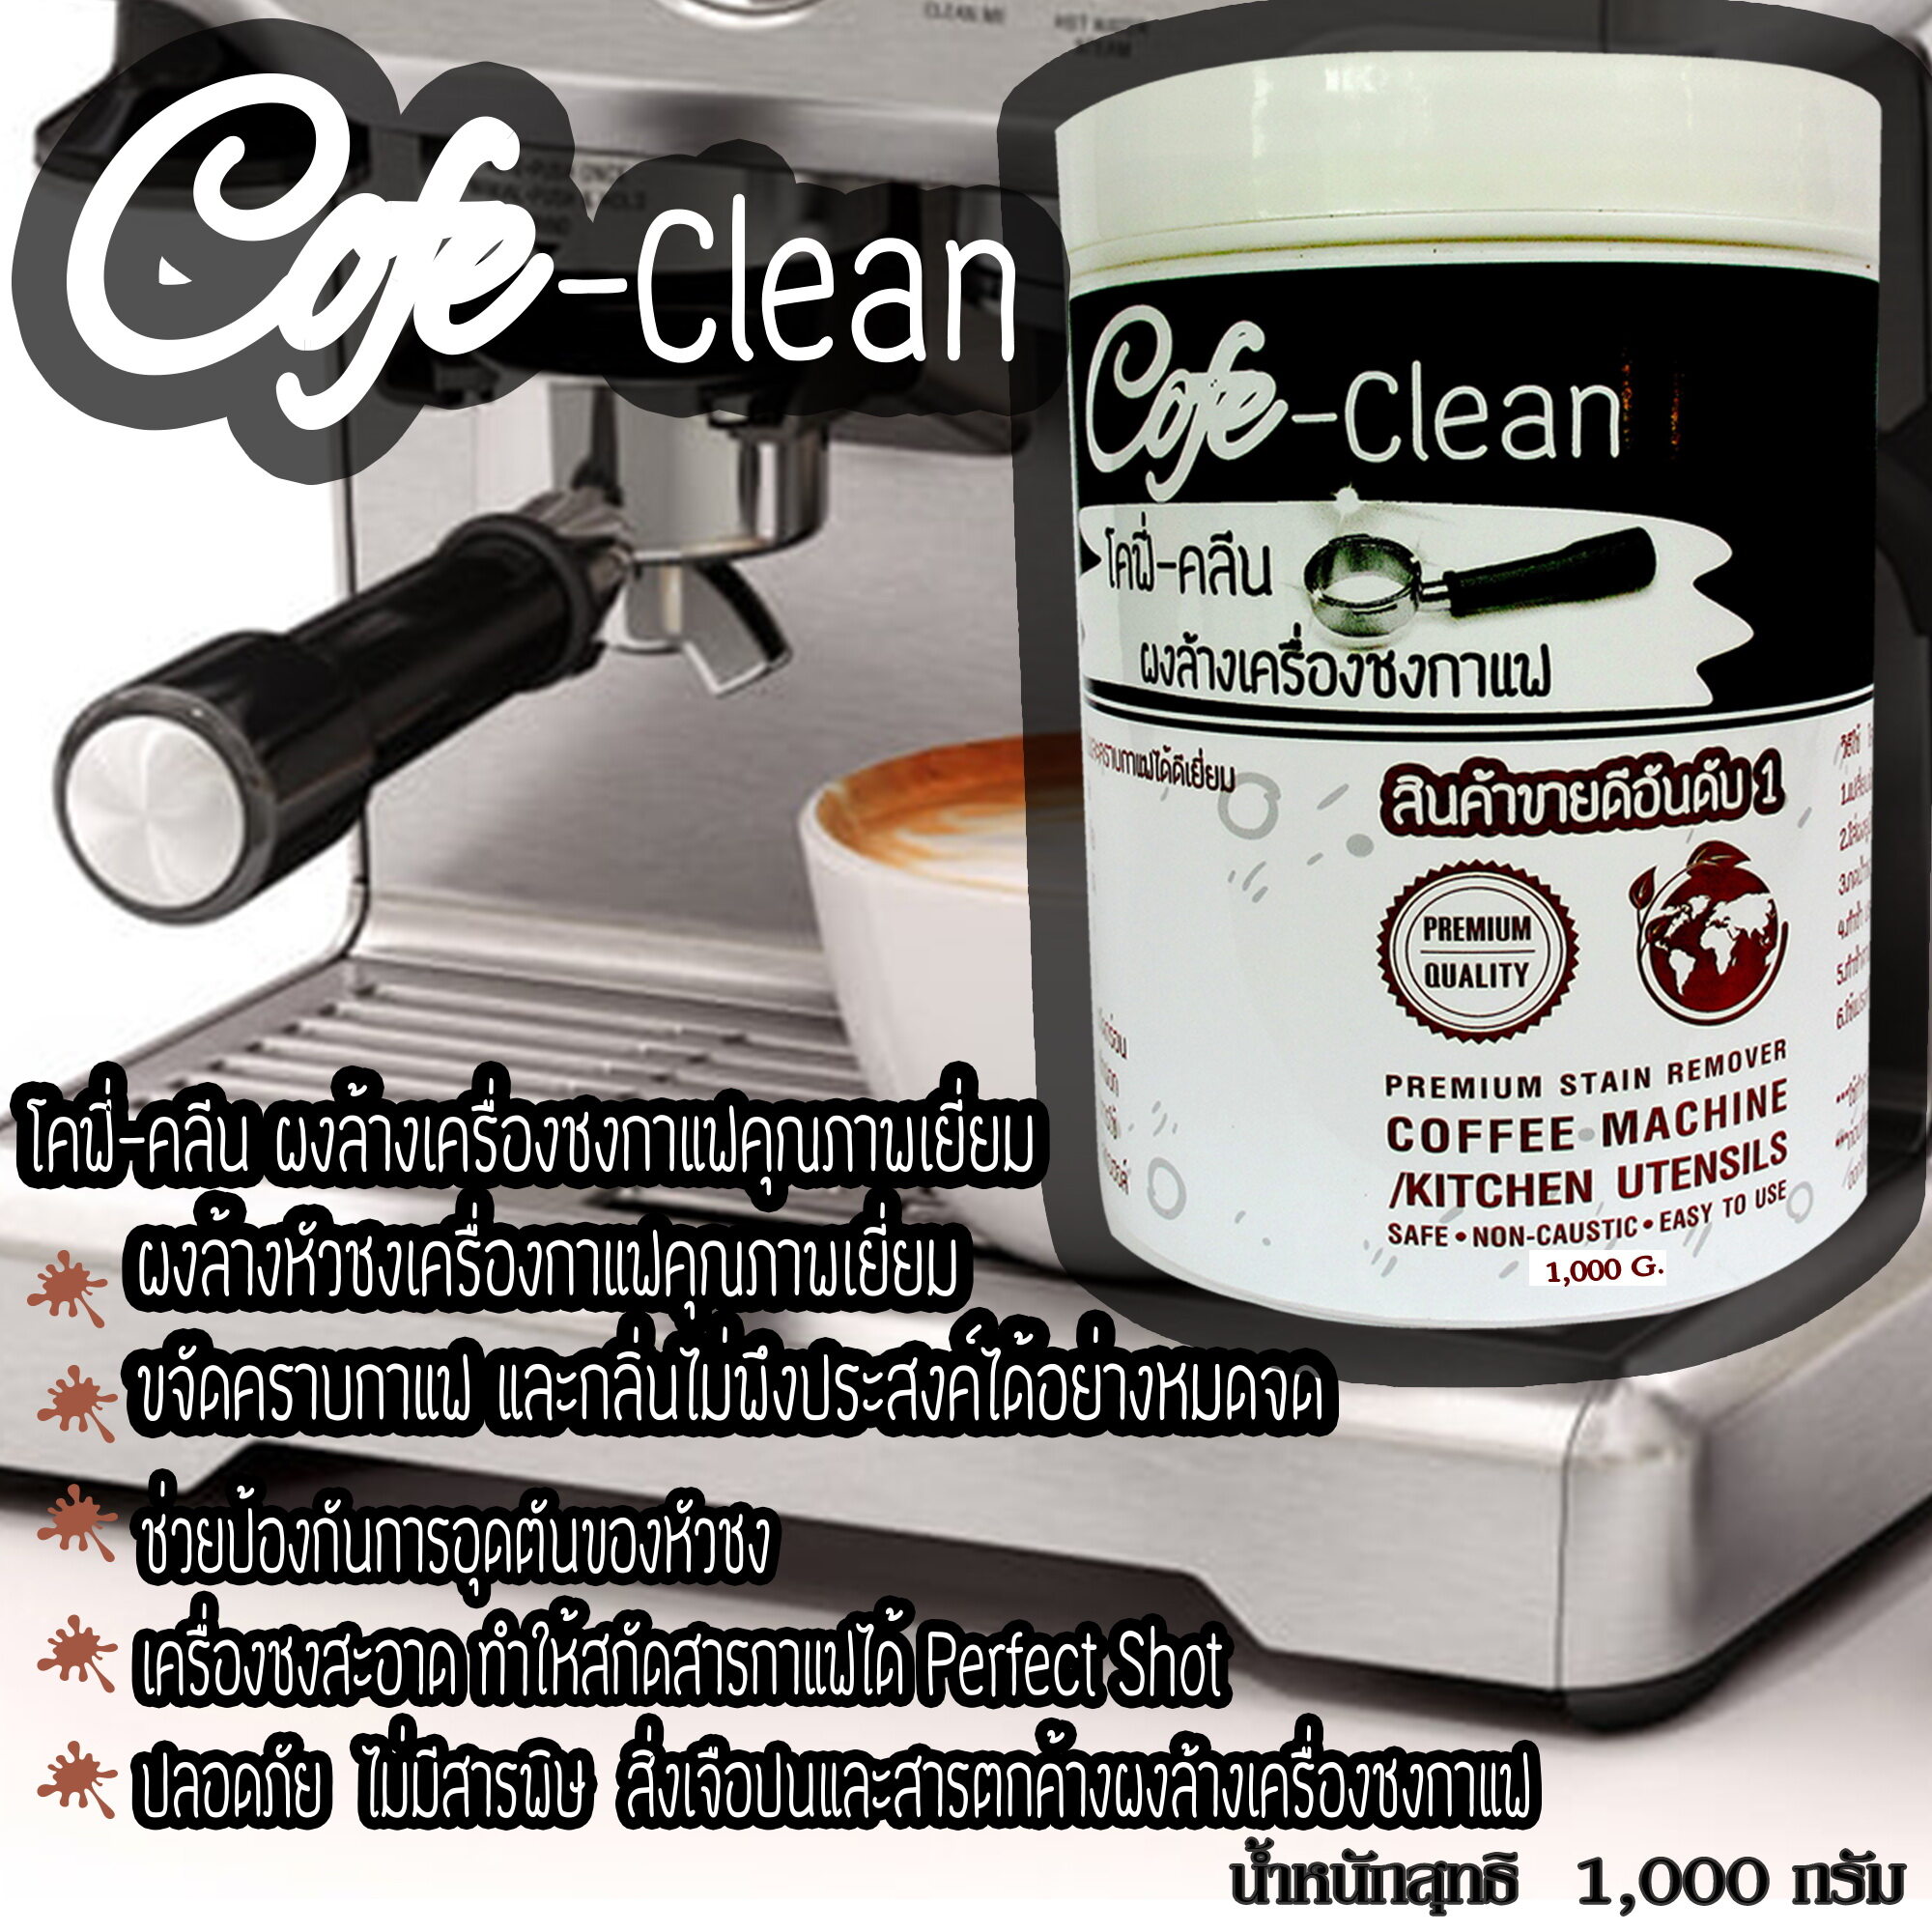 ผงล้างหัวชงCofe Cleanผงล้างเครื่องกาแฟ  ผงล้างหัวกรุ๊ป ขนาด1000กรัม ผงล้างเครื่องชงกาแฟ ผงล้างทำความสะอาดคราบกาแฟ คราบตะกรันในหัวชงกาแฟ-